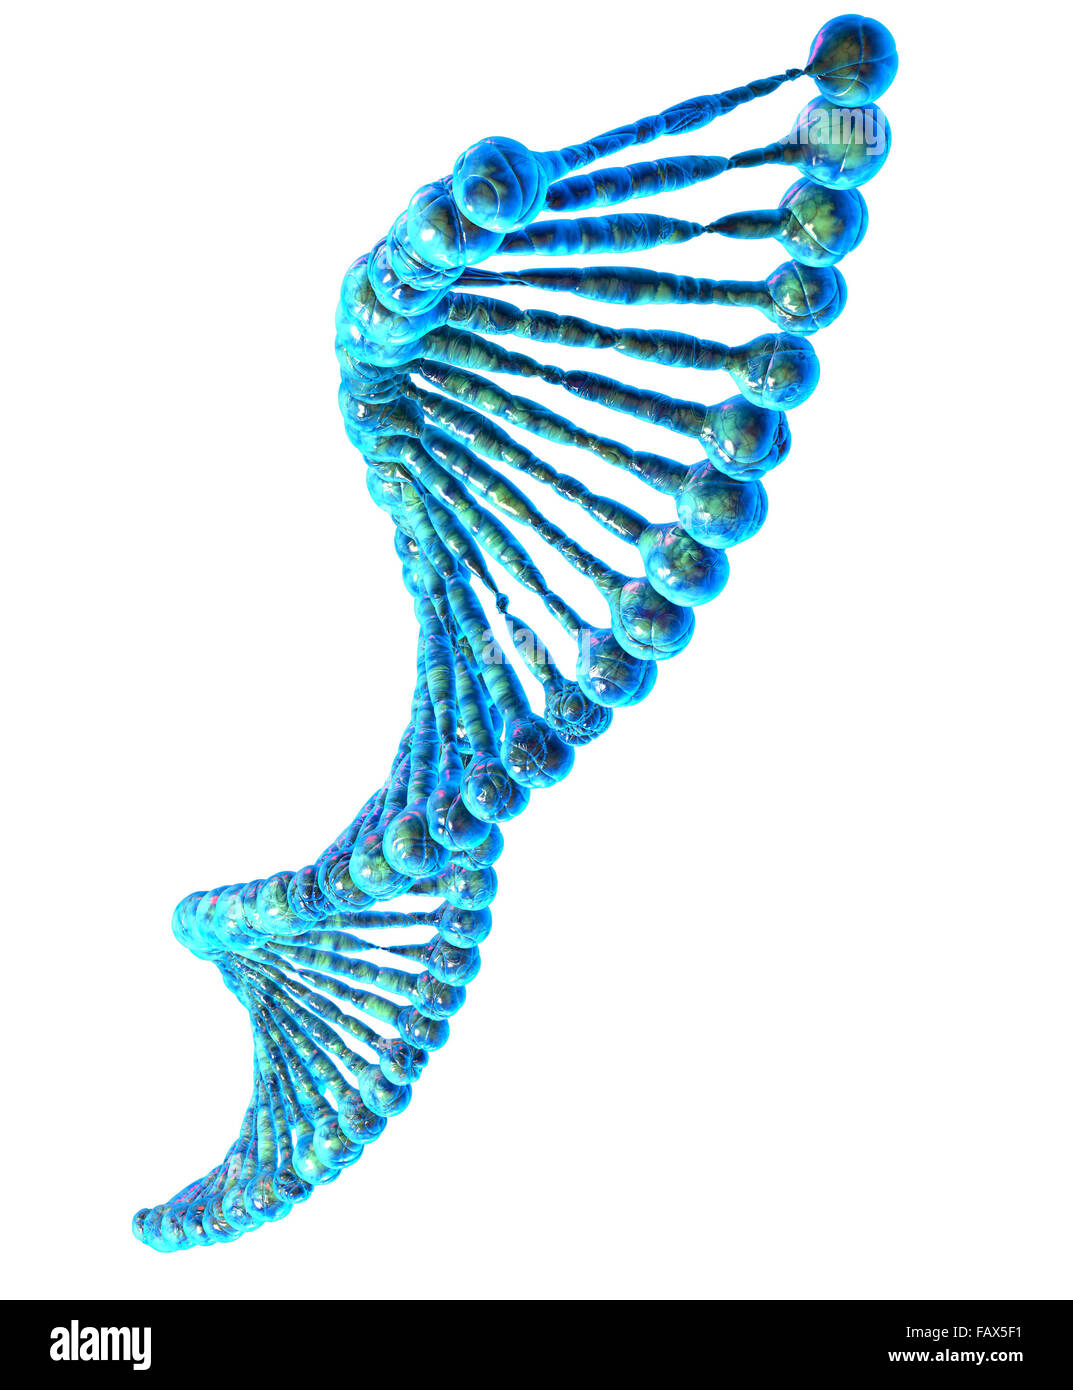 Hochauflösende 3d Render der menschlichen DNA-Zeichenfolge Stockfoto